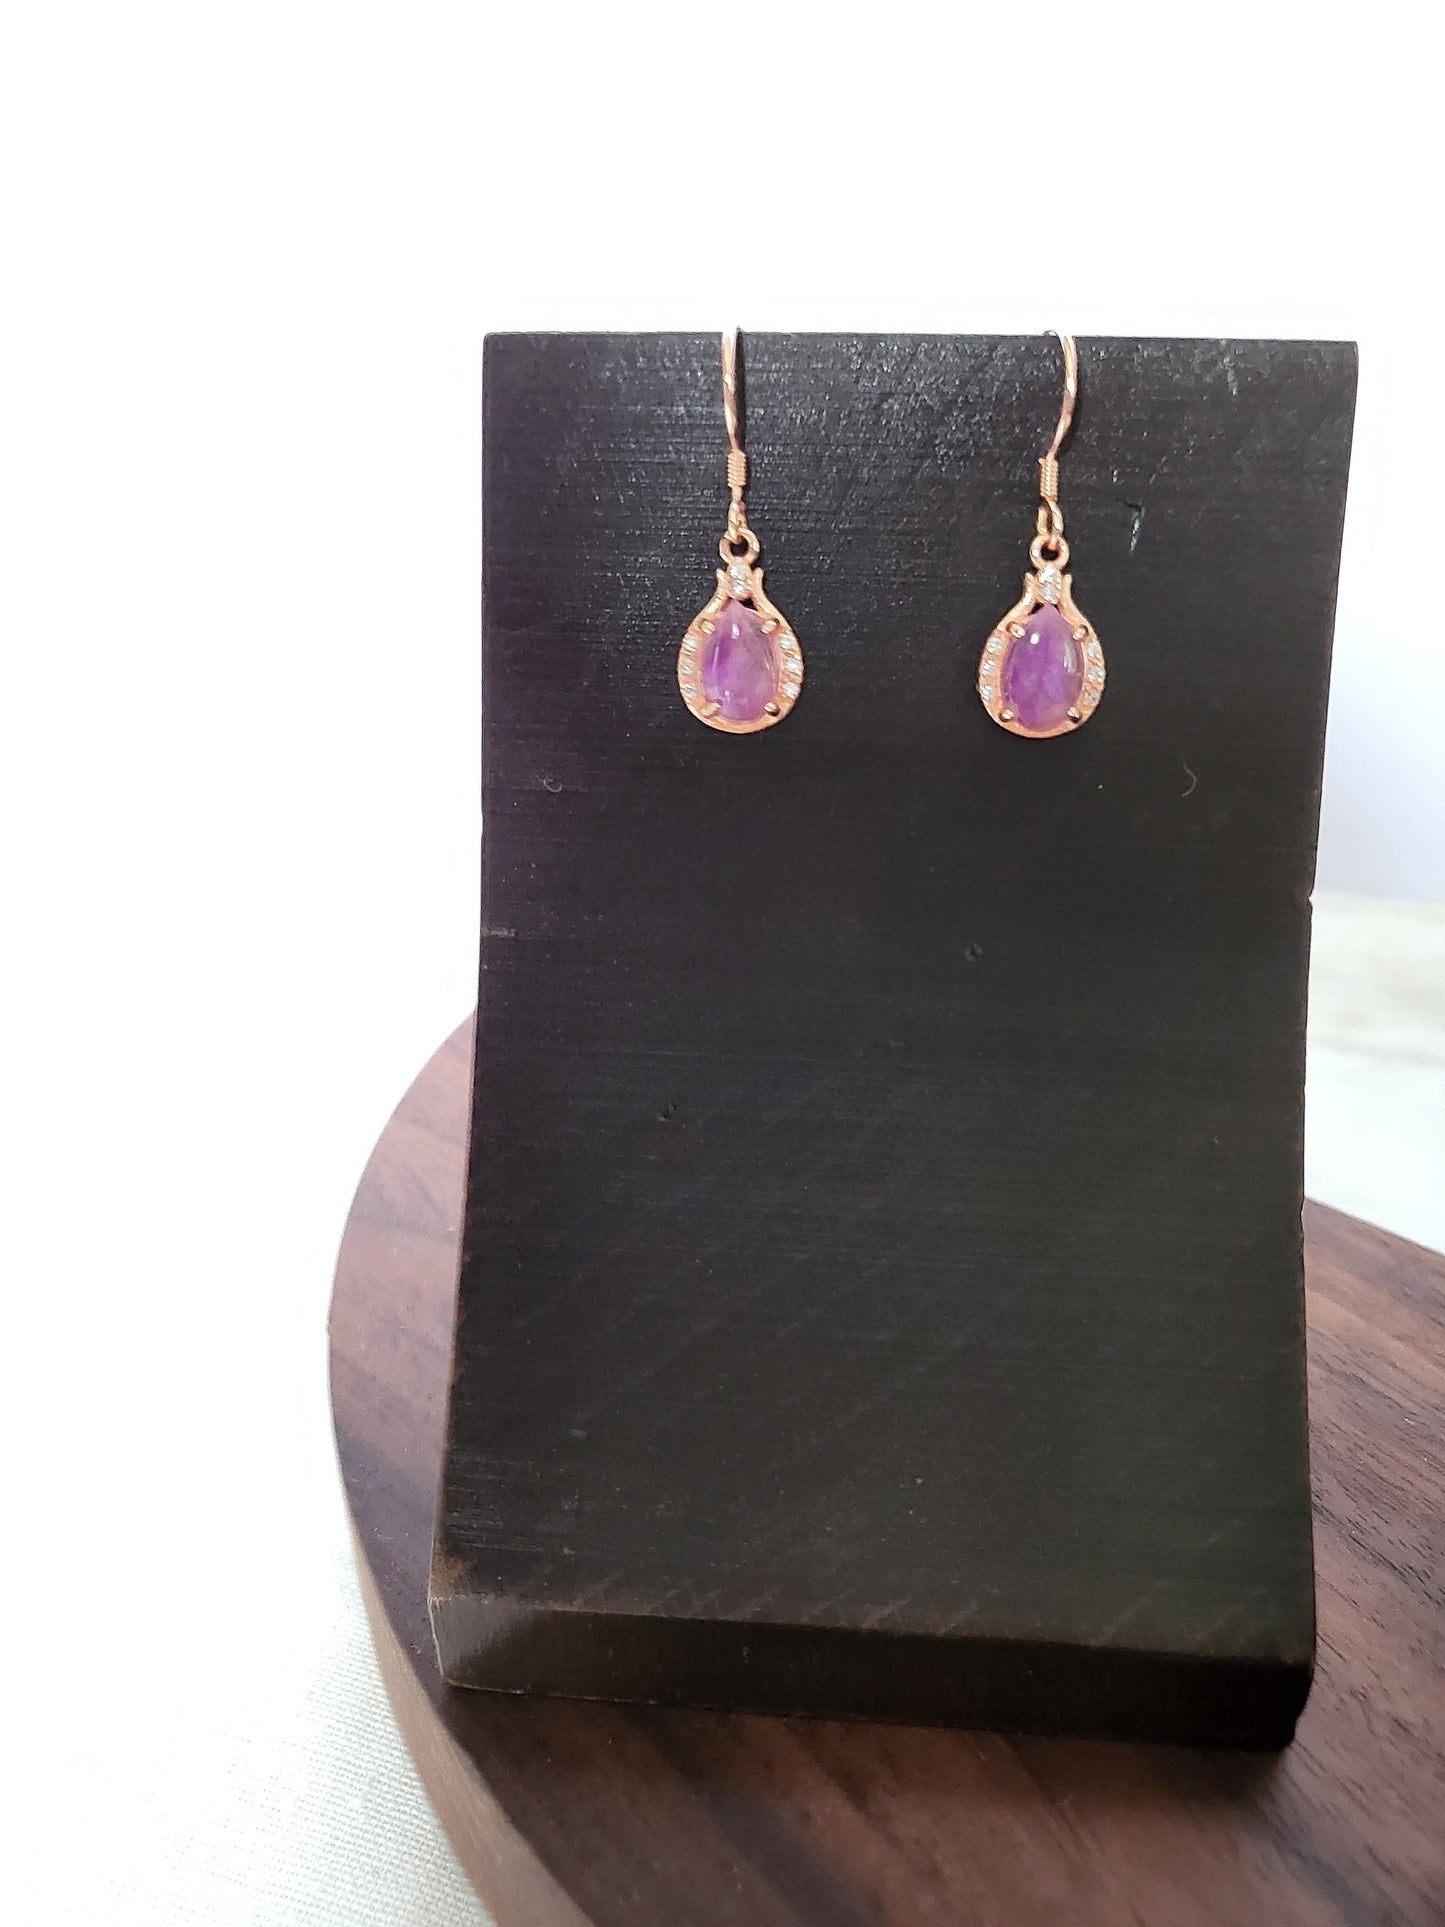 Natural Gel Sugilite Earrings Watercolor Purple Rose Gold Dangle Earrings with Crystals Gemstone Teardrop